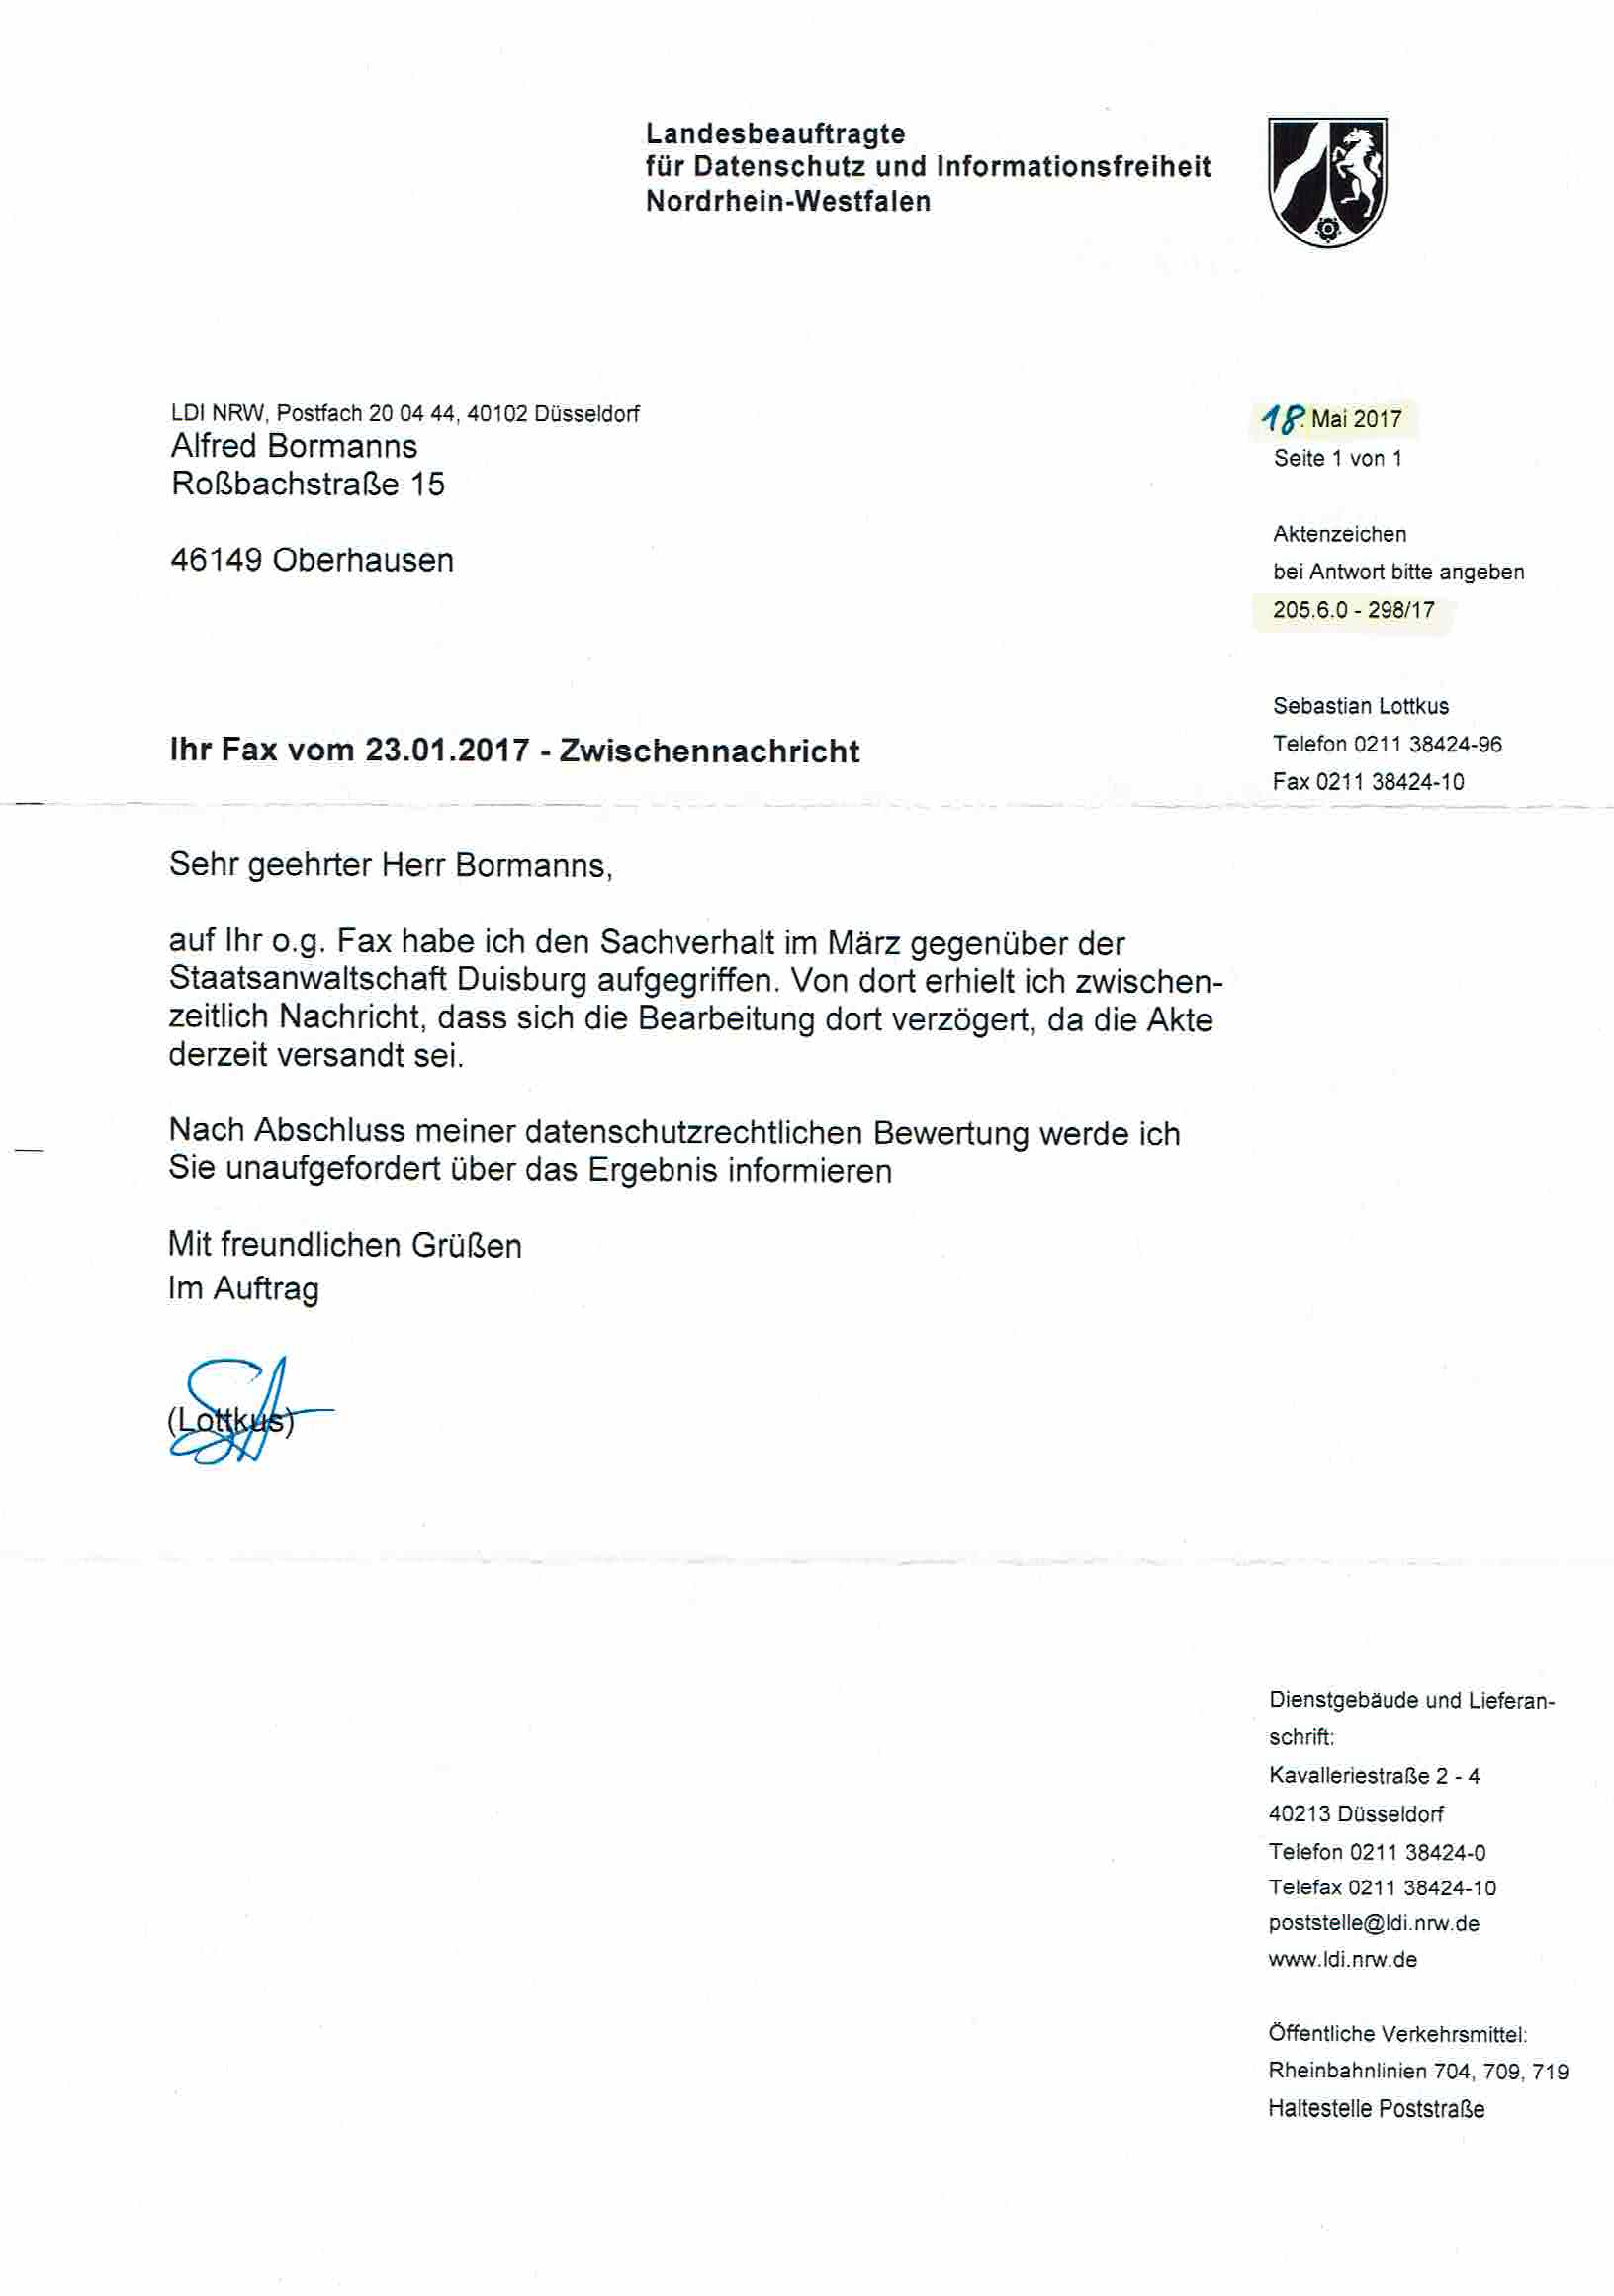 Nachricht der Landesbeauftragen für Datenschutz und Informationsfreiheit Nordrhein-Westfalen vom 18.05.2017